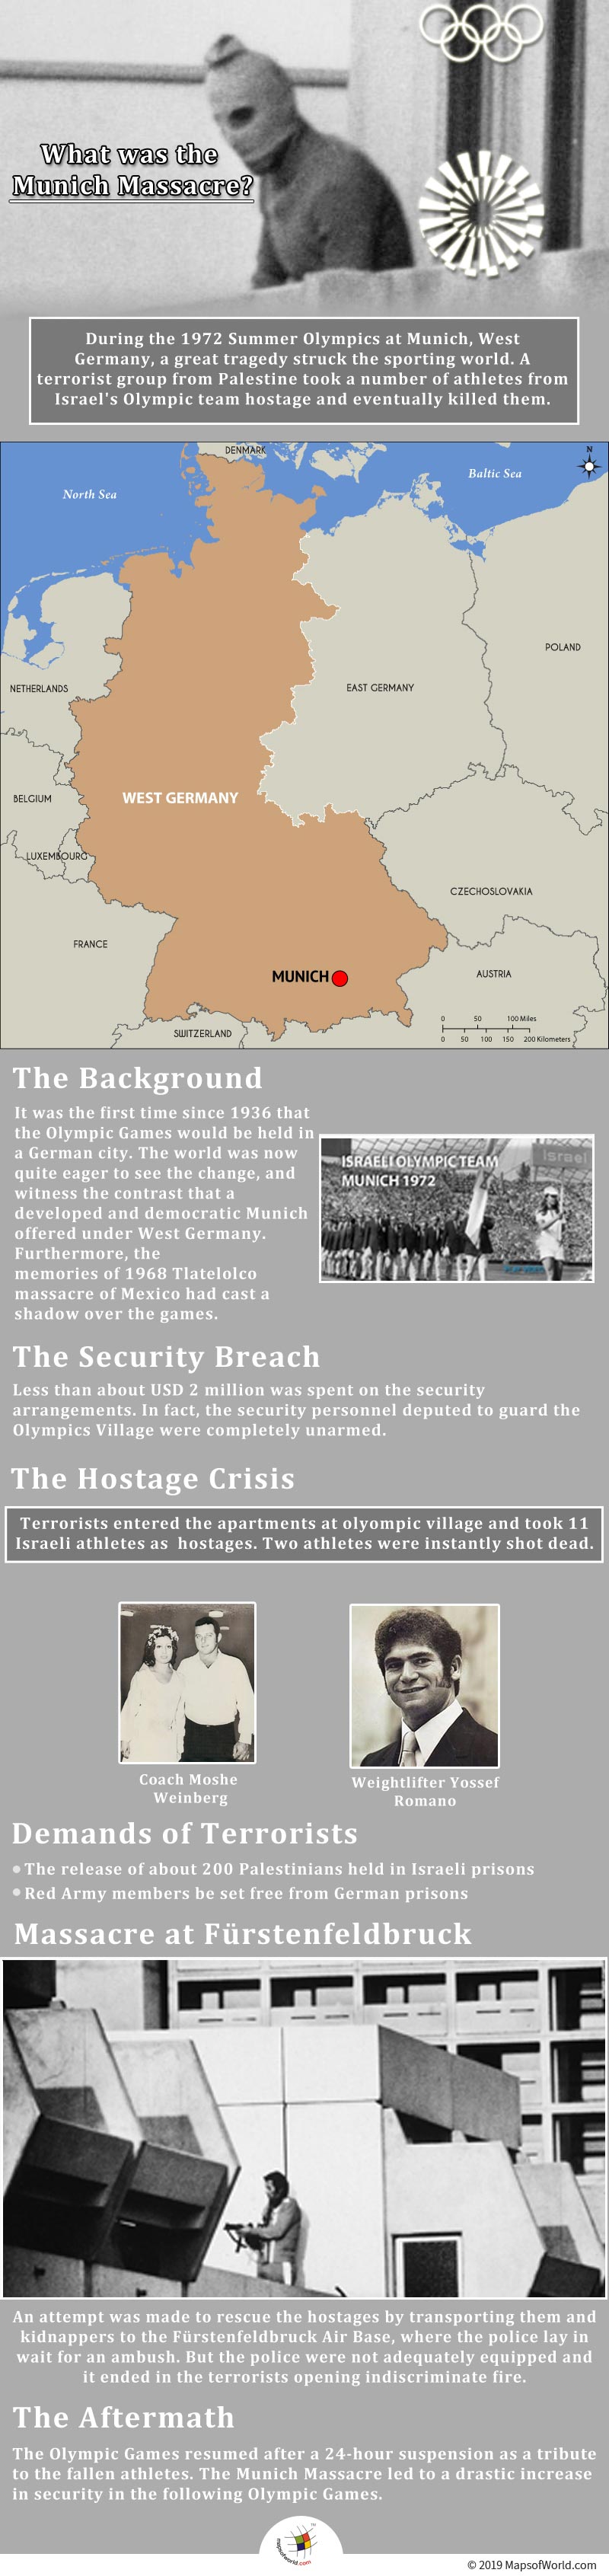 Infographic Showing Munich Massacre